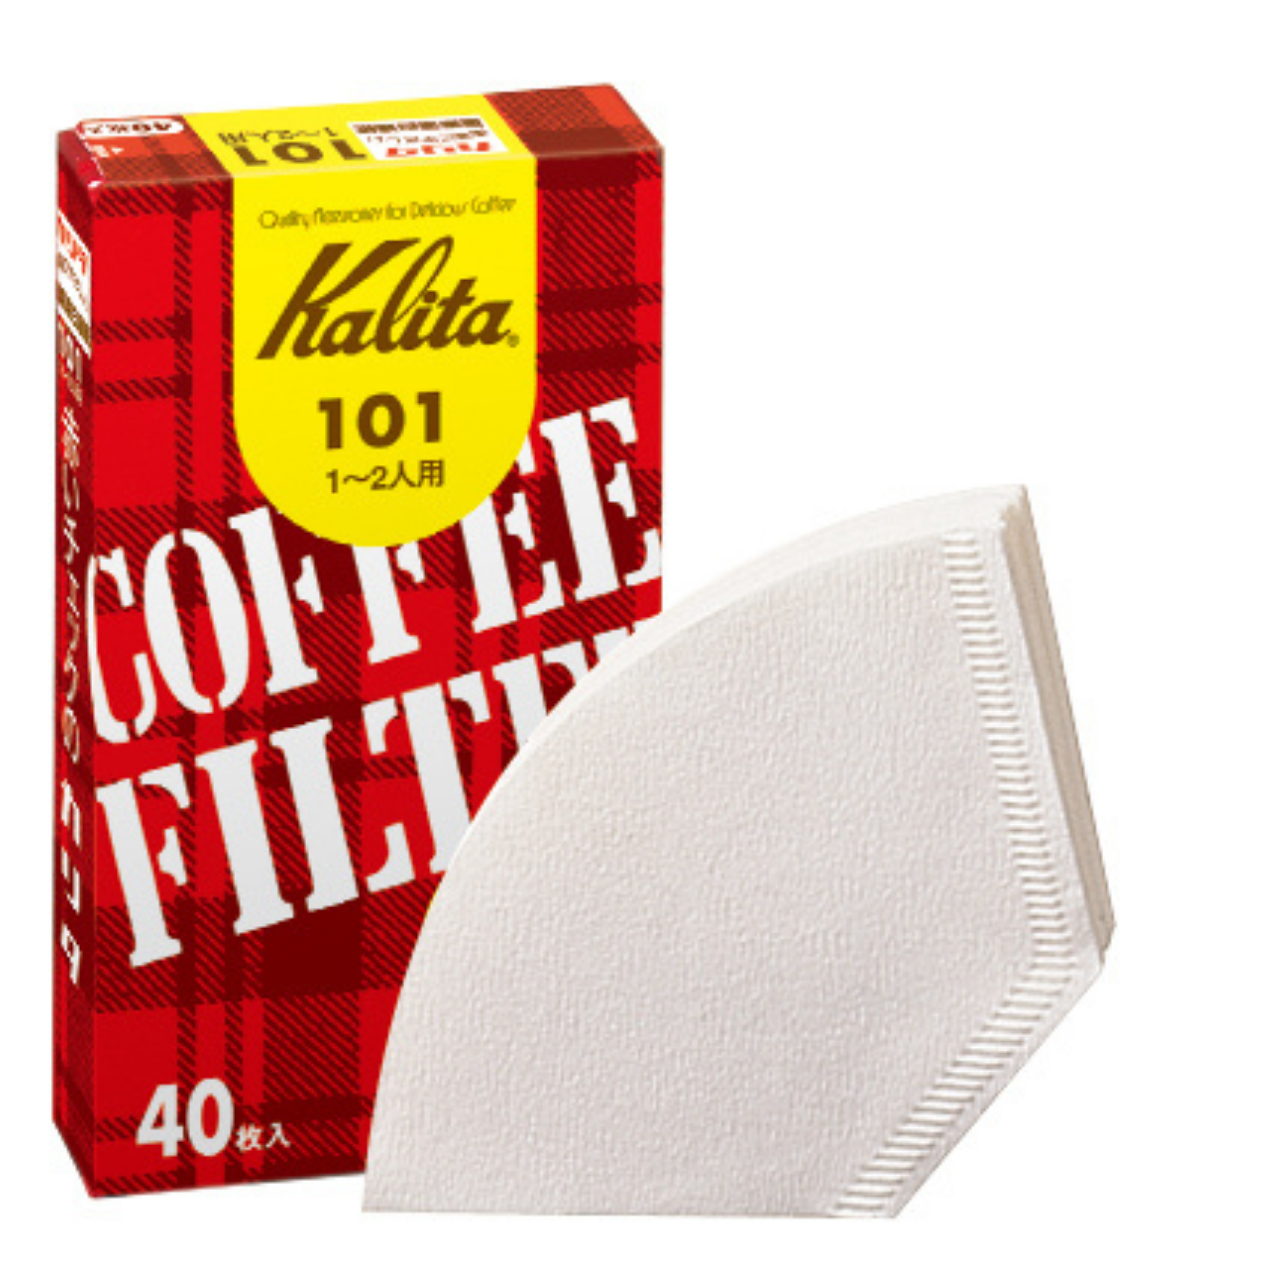 Kalita　コーヒーフィルター 101濾紙 ホワイト(40枚入)